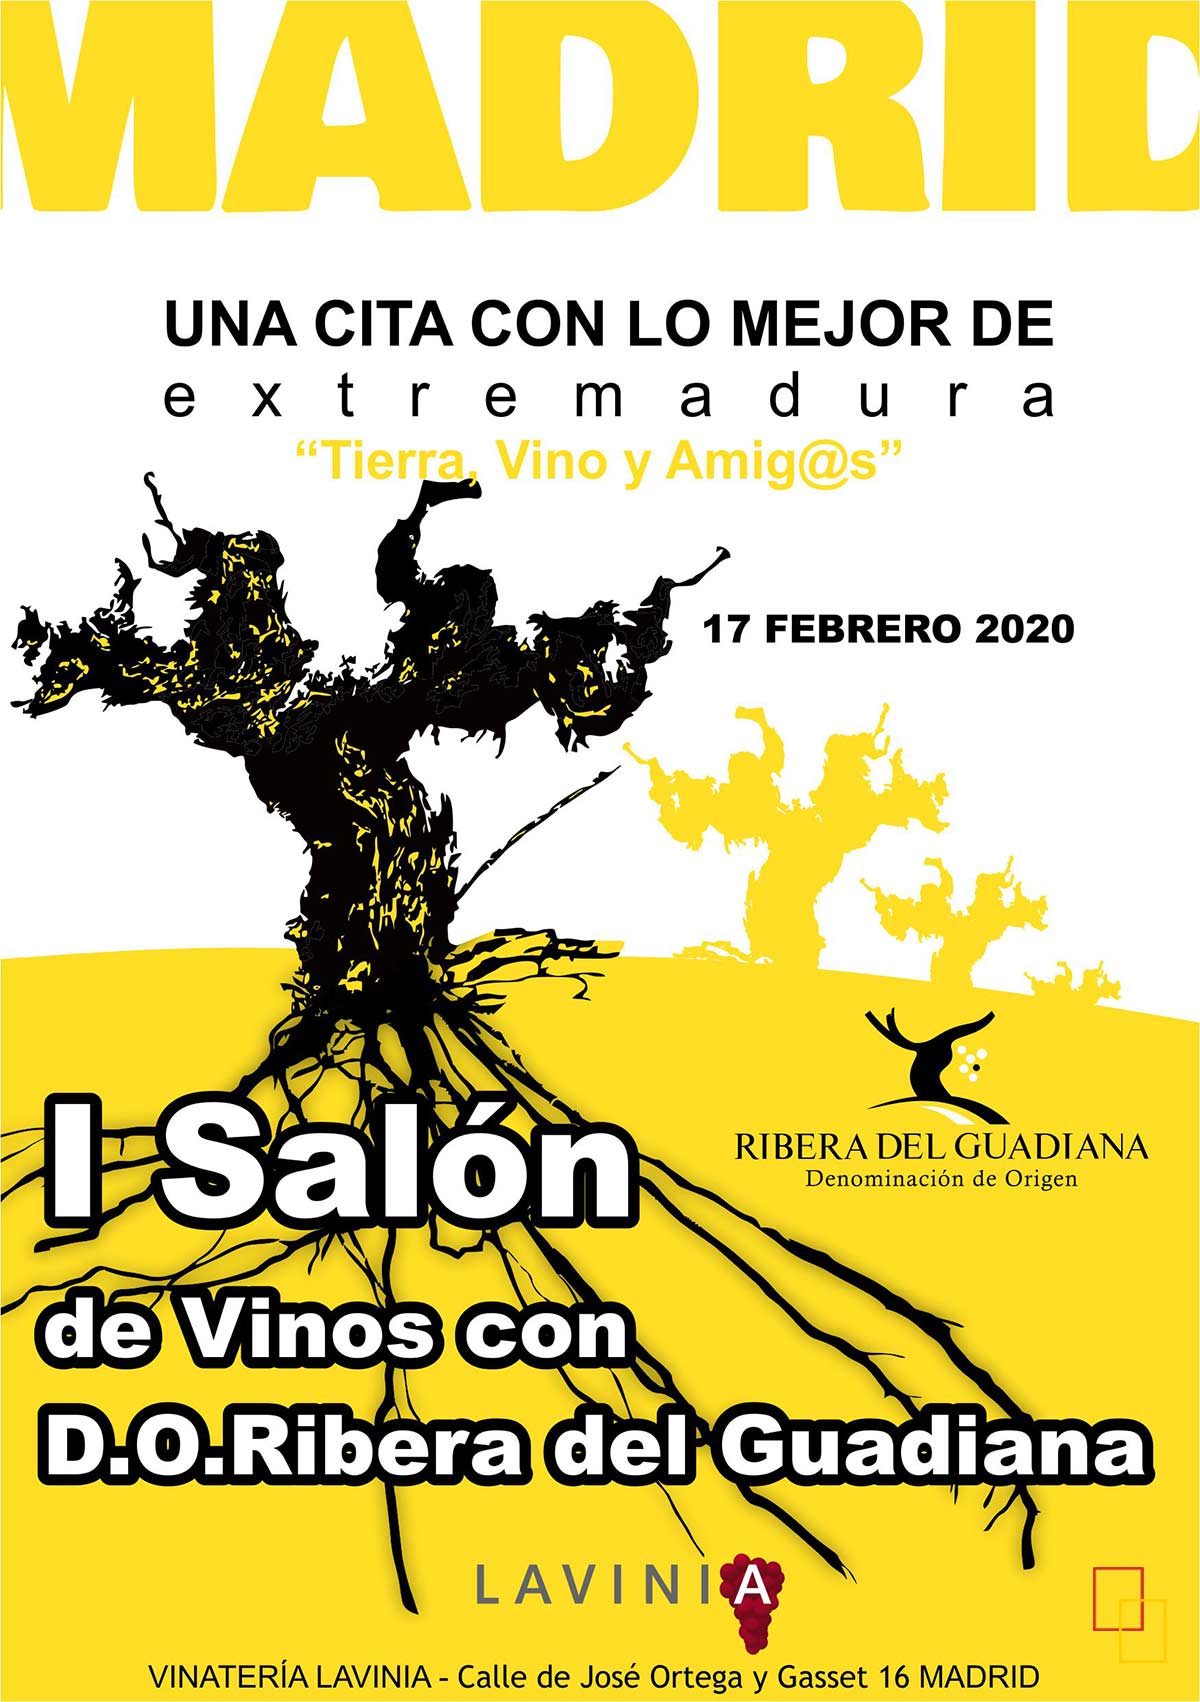 I Salón de Vinos con Denominación de Origen Ribera del Guadiana 17 de febrero 2020 en Lavinia, Madrid